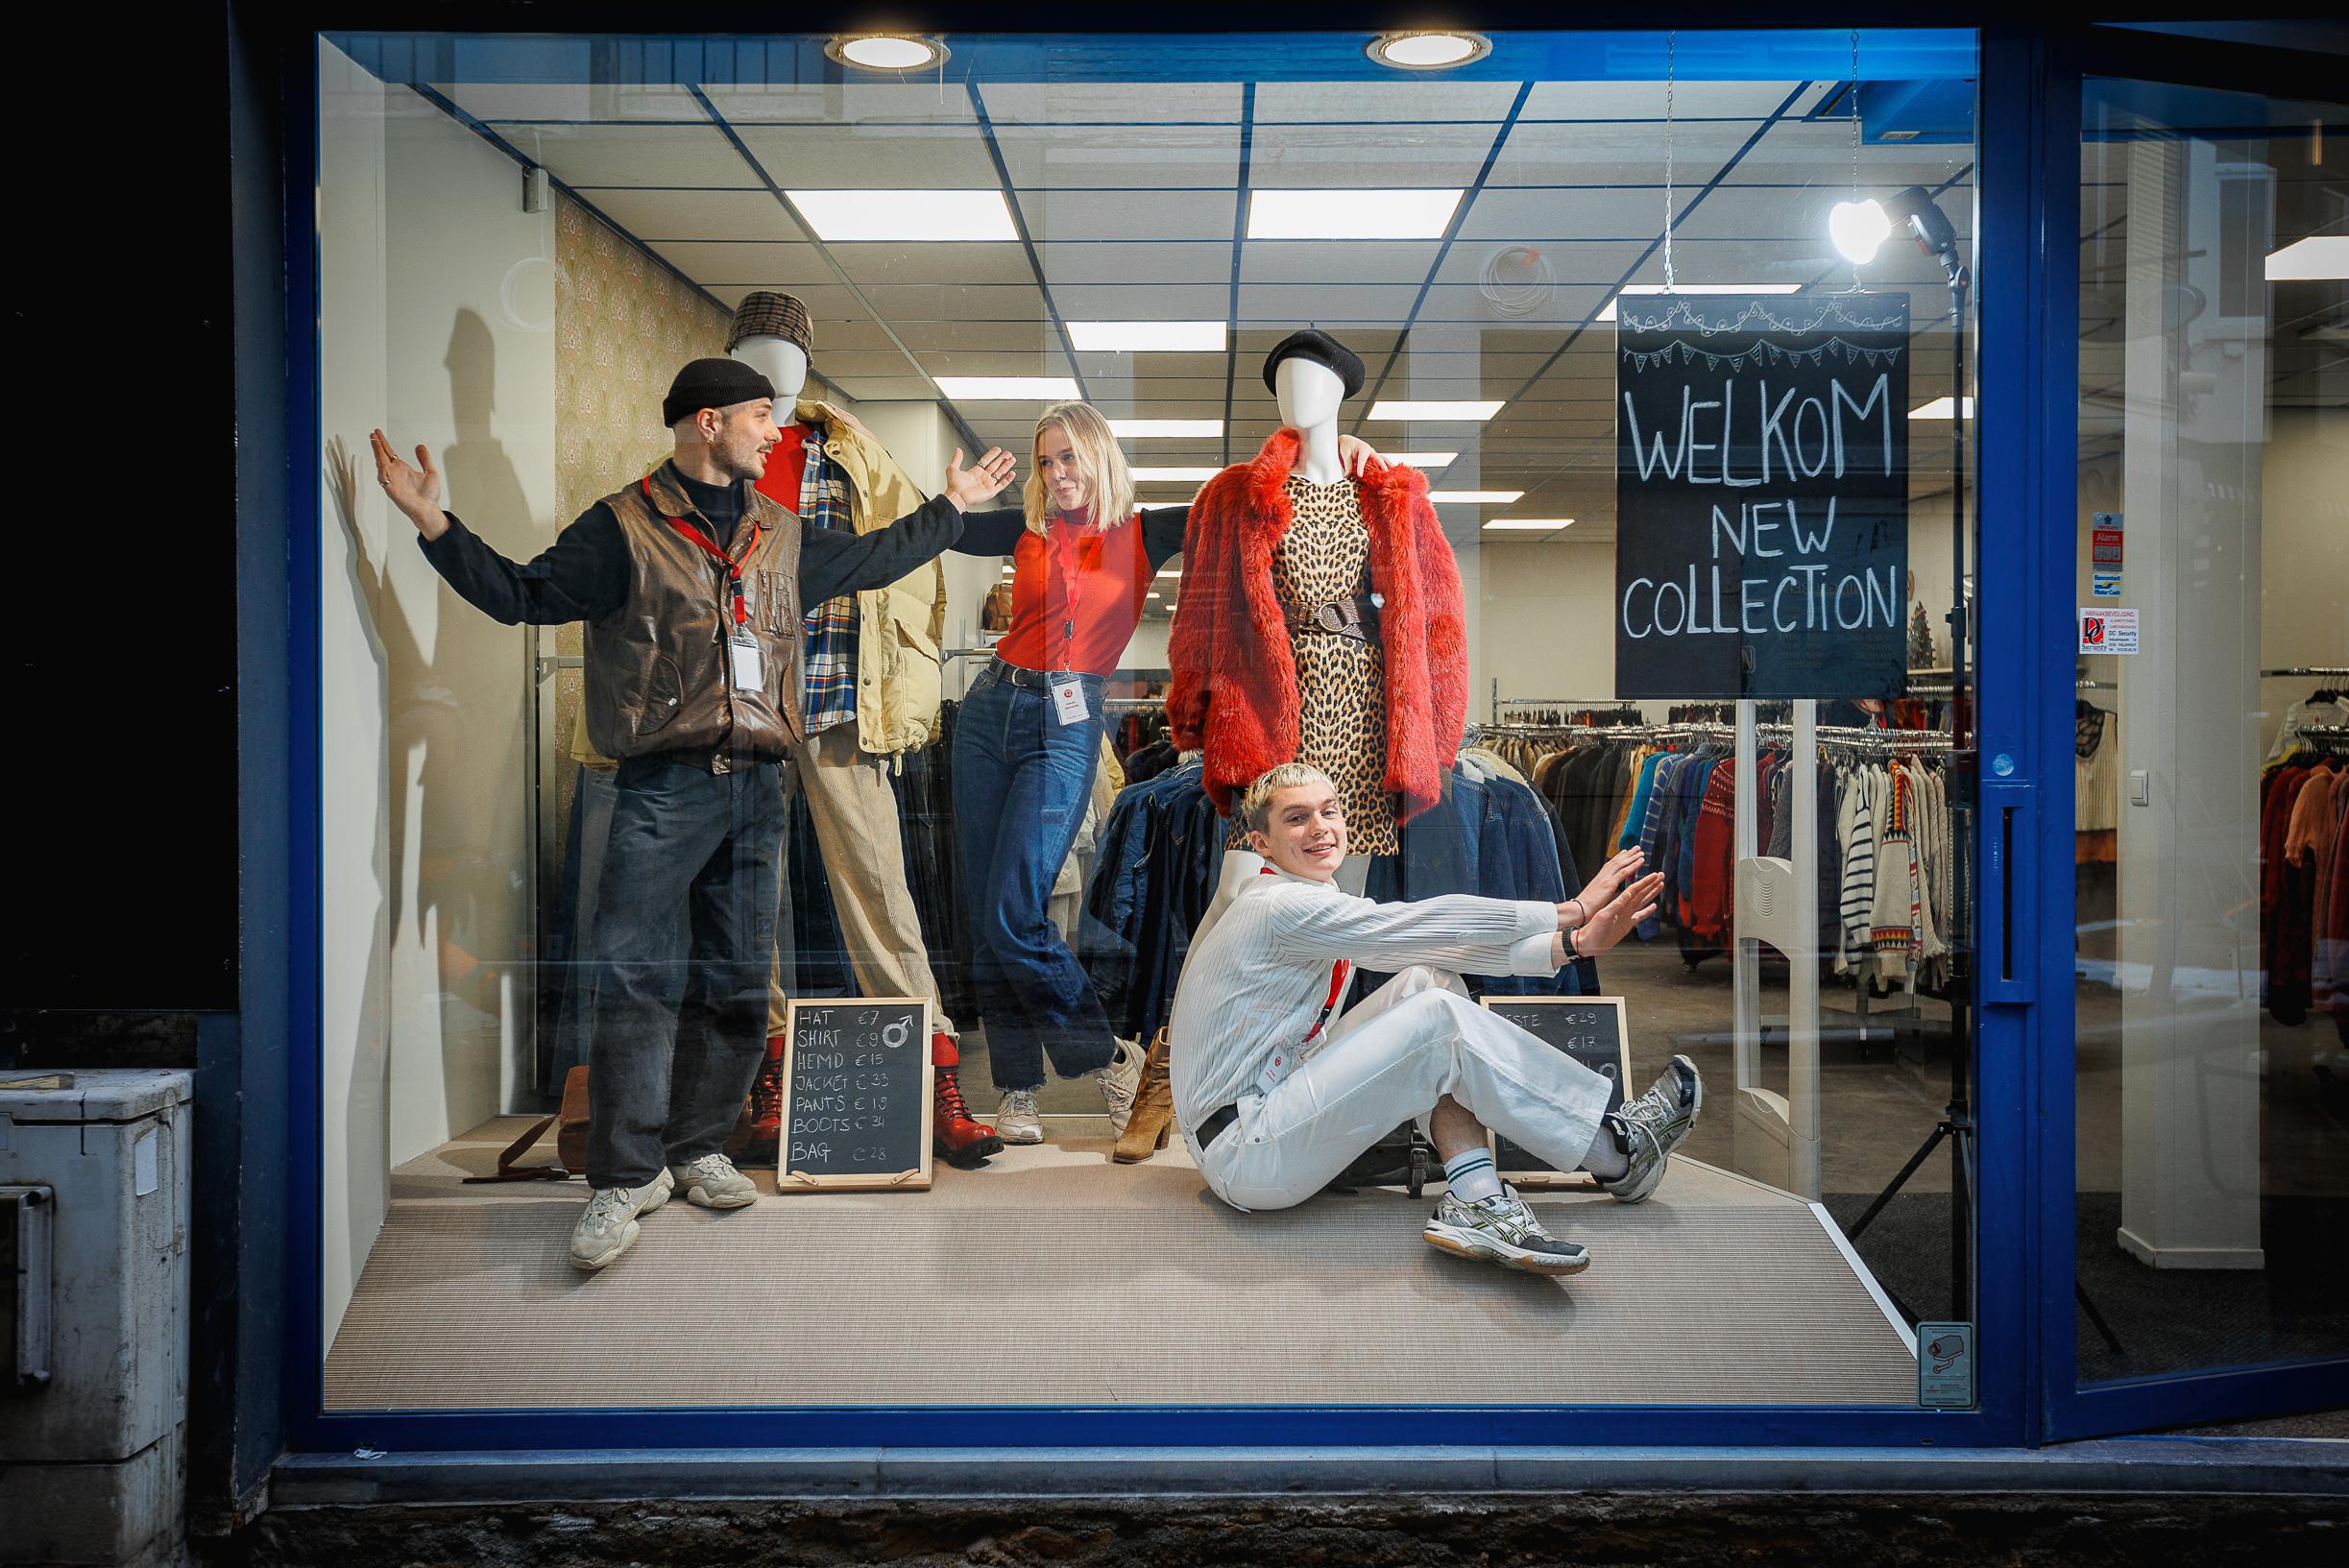 slim Nationaal volkslied Automatisch Populaire keten Think Twice opent winkel met vintage tweedehandskleding in  Geitestraat: “De Mechelaars vragen er al lang om” (Mechelen) | Het  Nieuwsblad Mobile